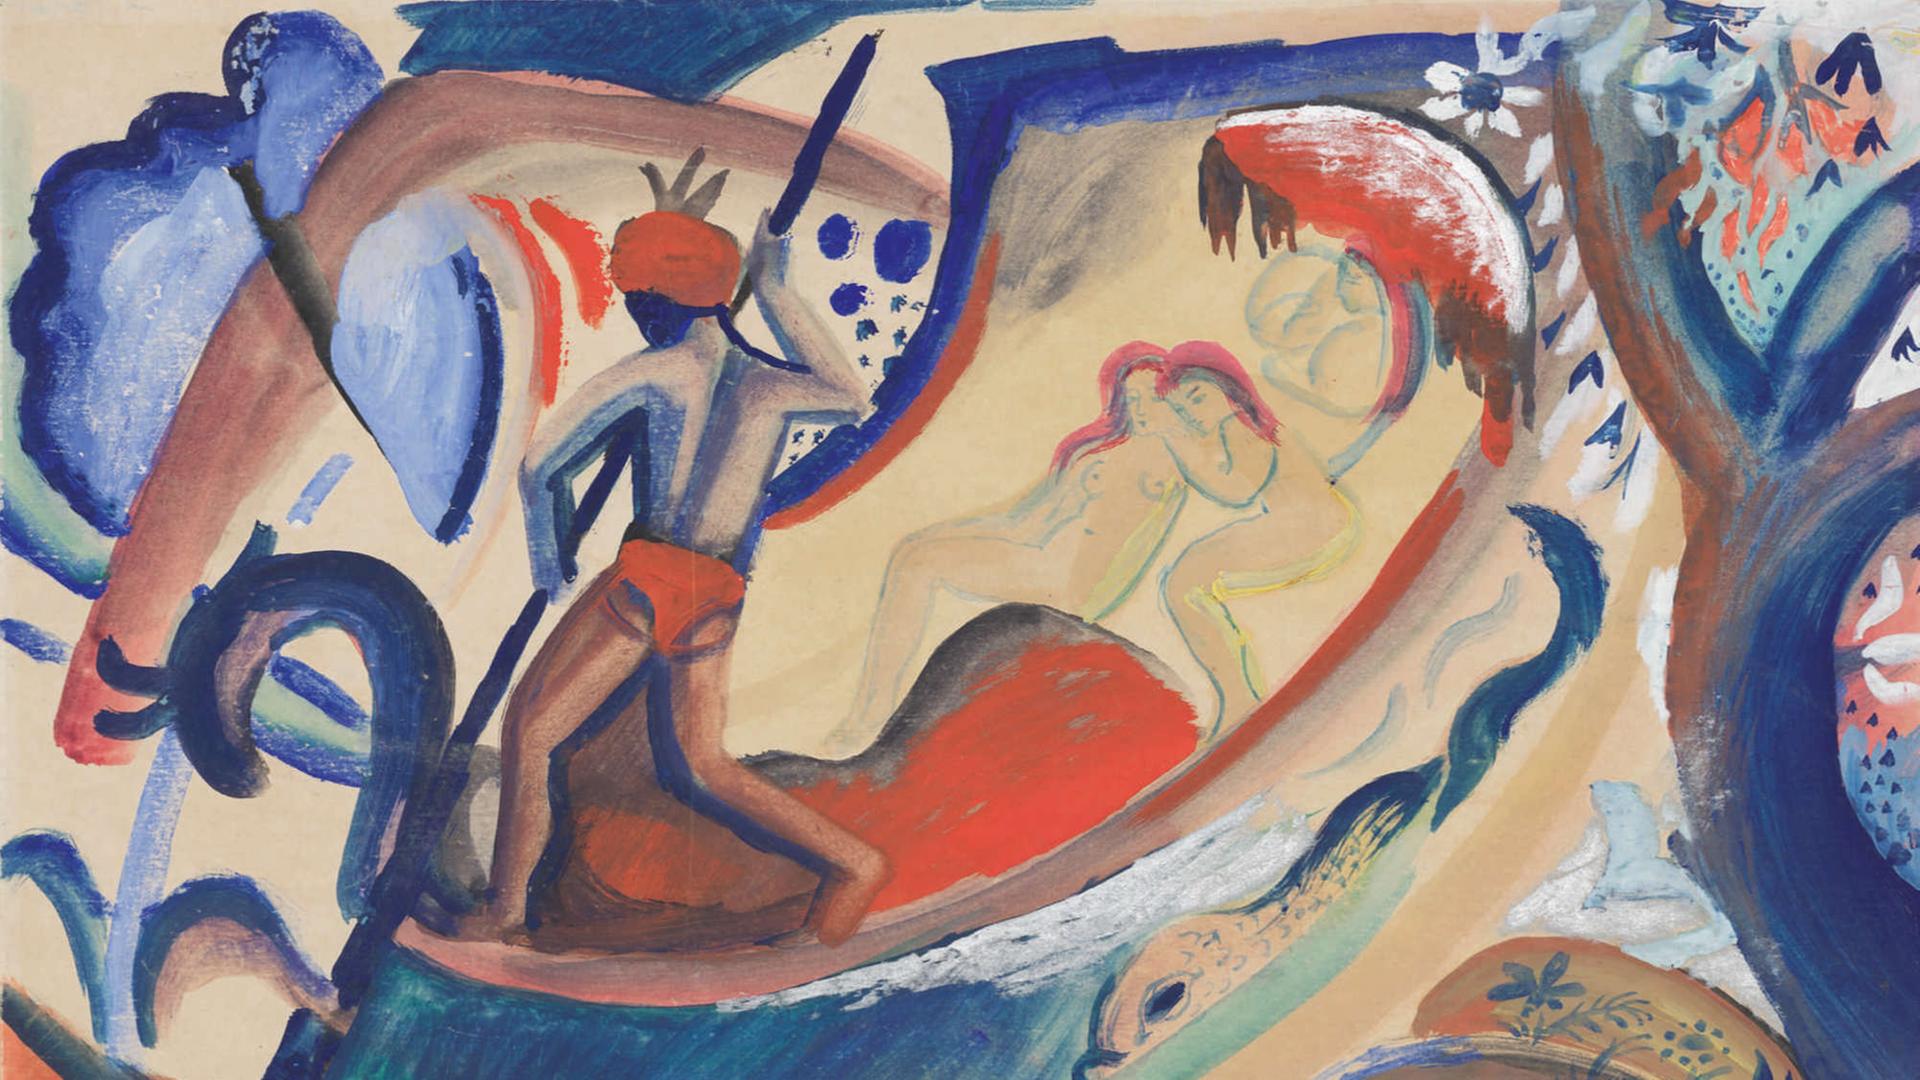 Das Aquarell "Nackte Mädchen in der Barke" von August Macke zeigt Frauengestalten, die in einem Boot liegen, während ein Mann mit Turban rudert. Das Gemälde ist in kräften Rot- und Blautönen gehalten.